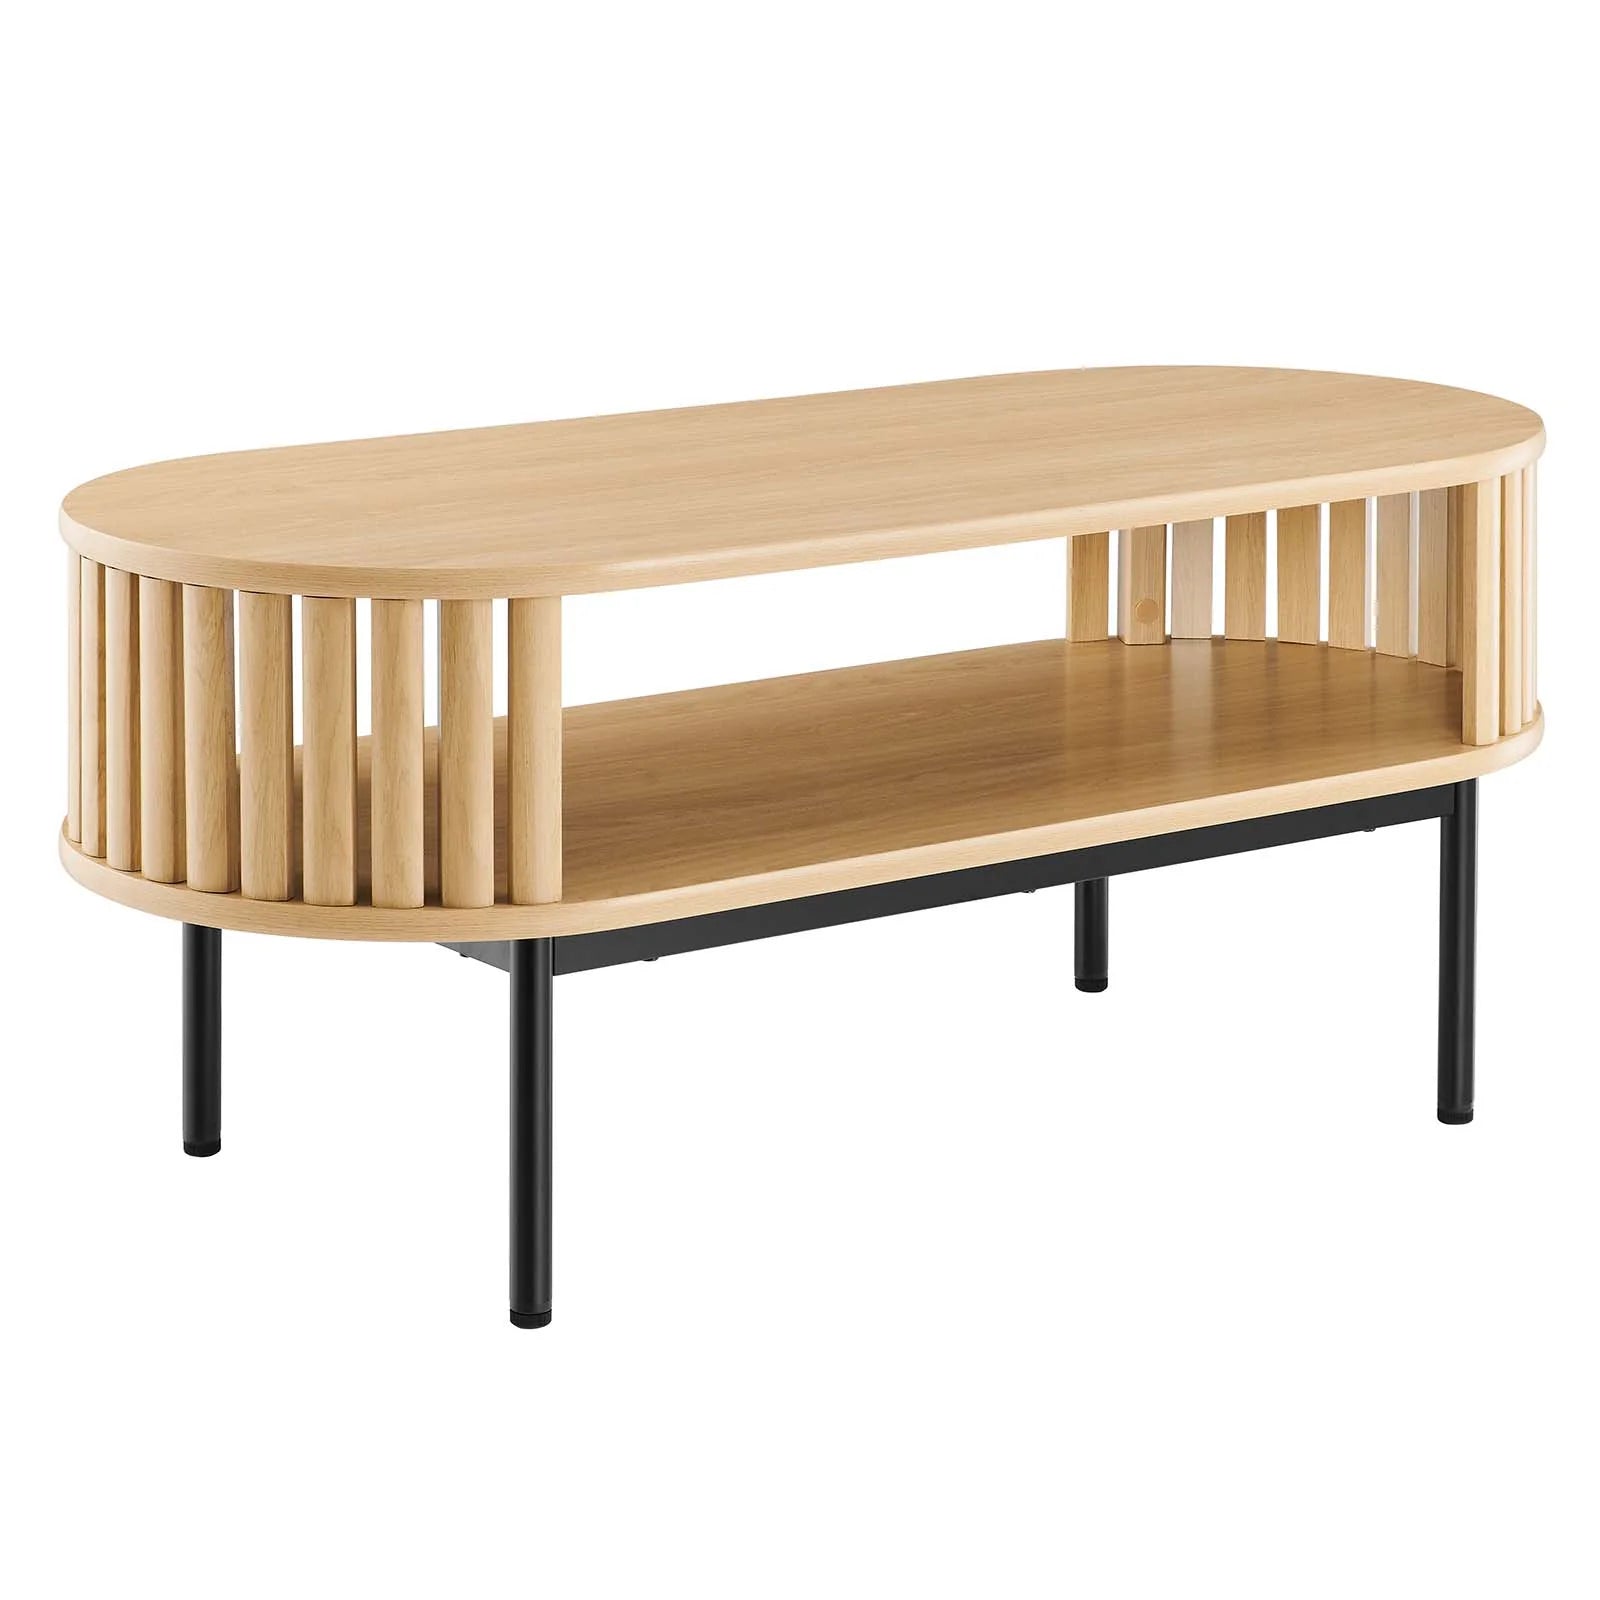 Mesa de centro ovalada de madera color roble Veron.